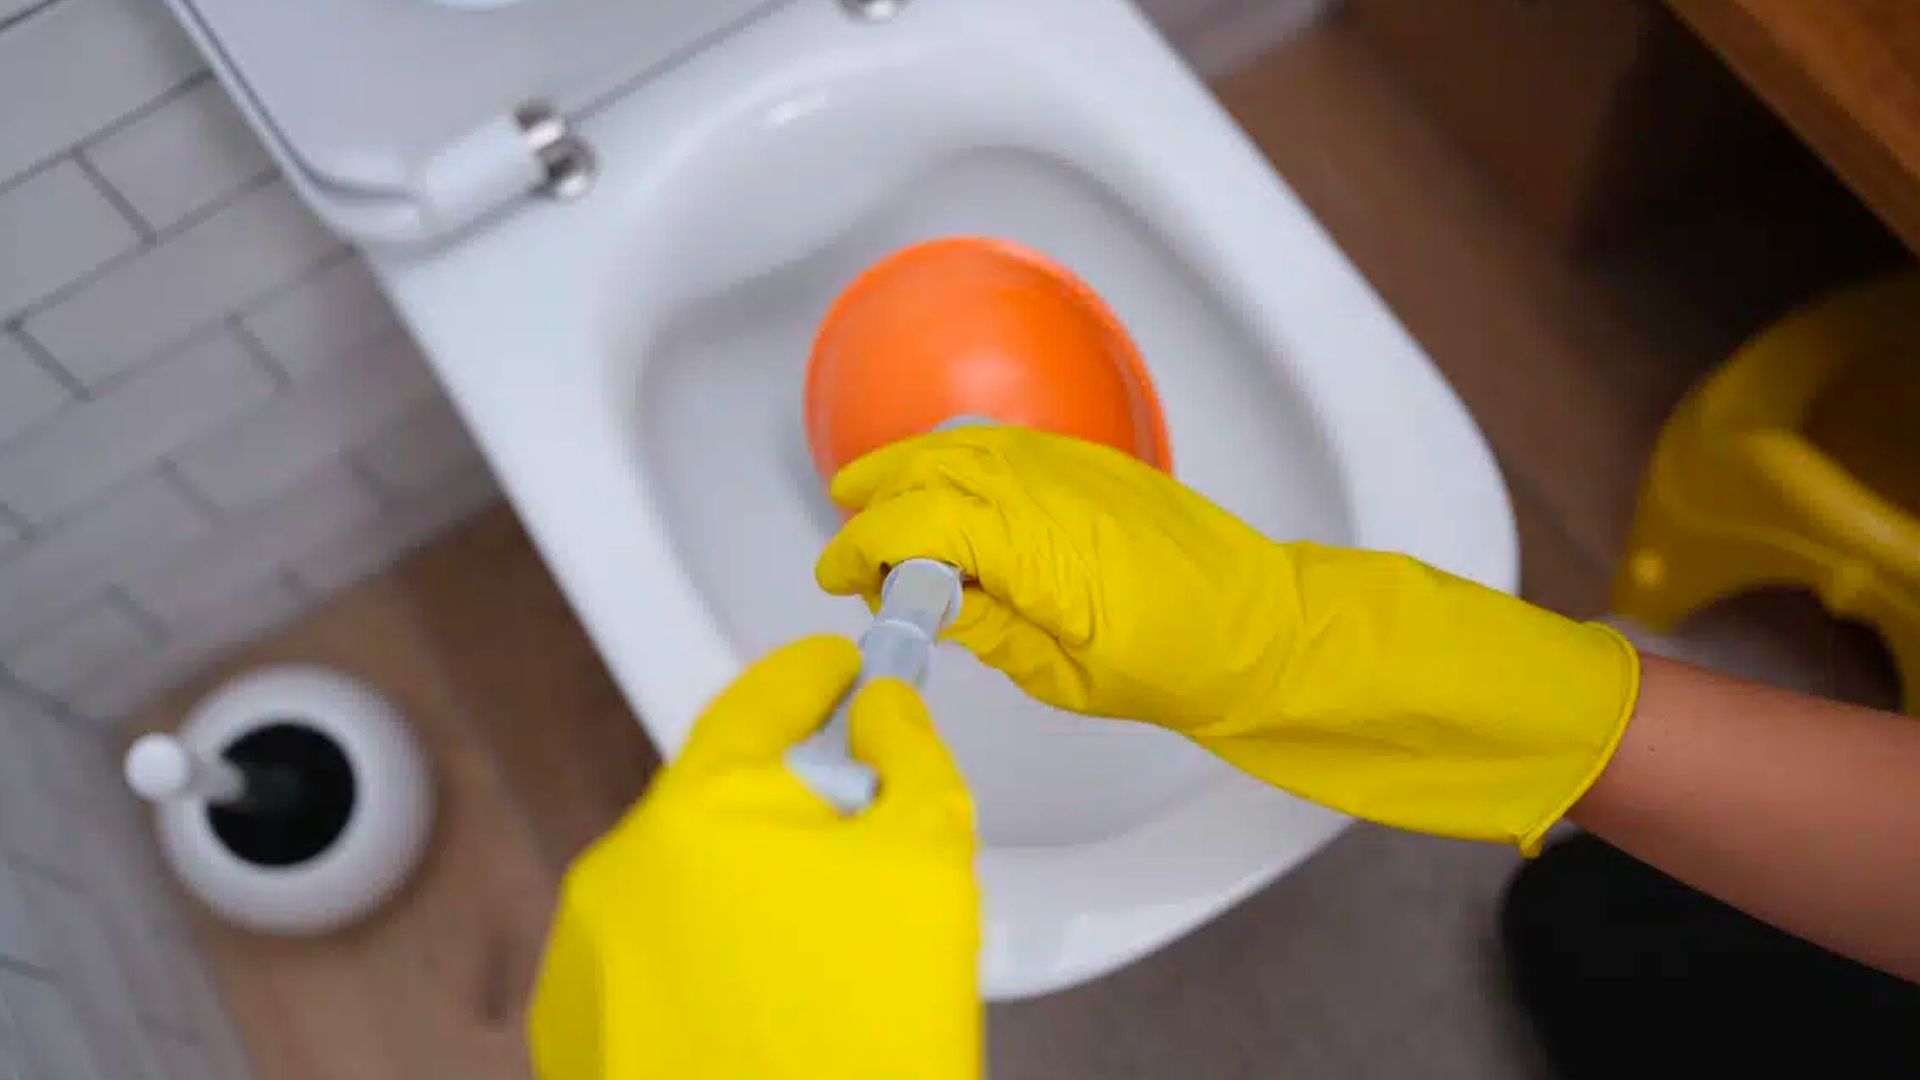 Orange Plunger Yellow Gloves